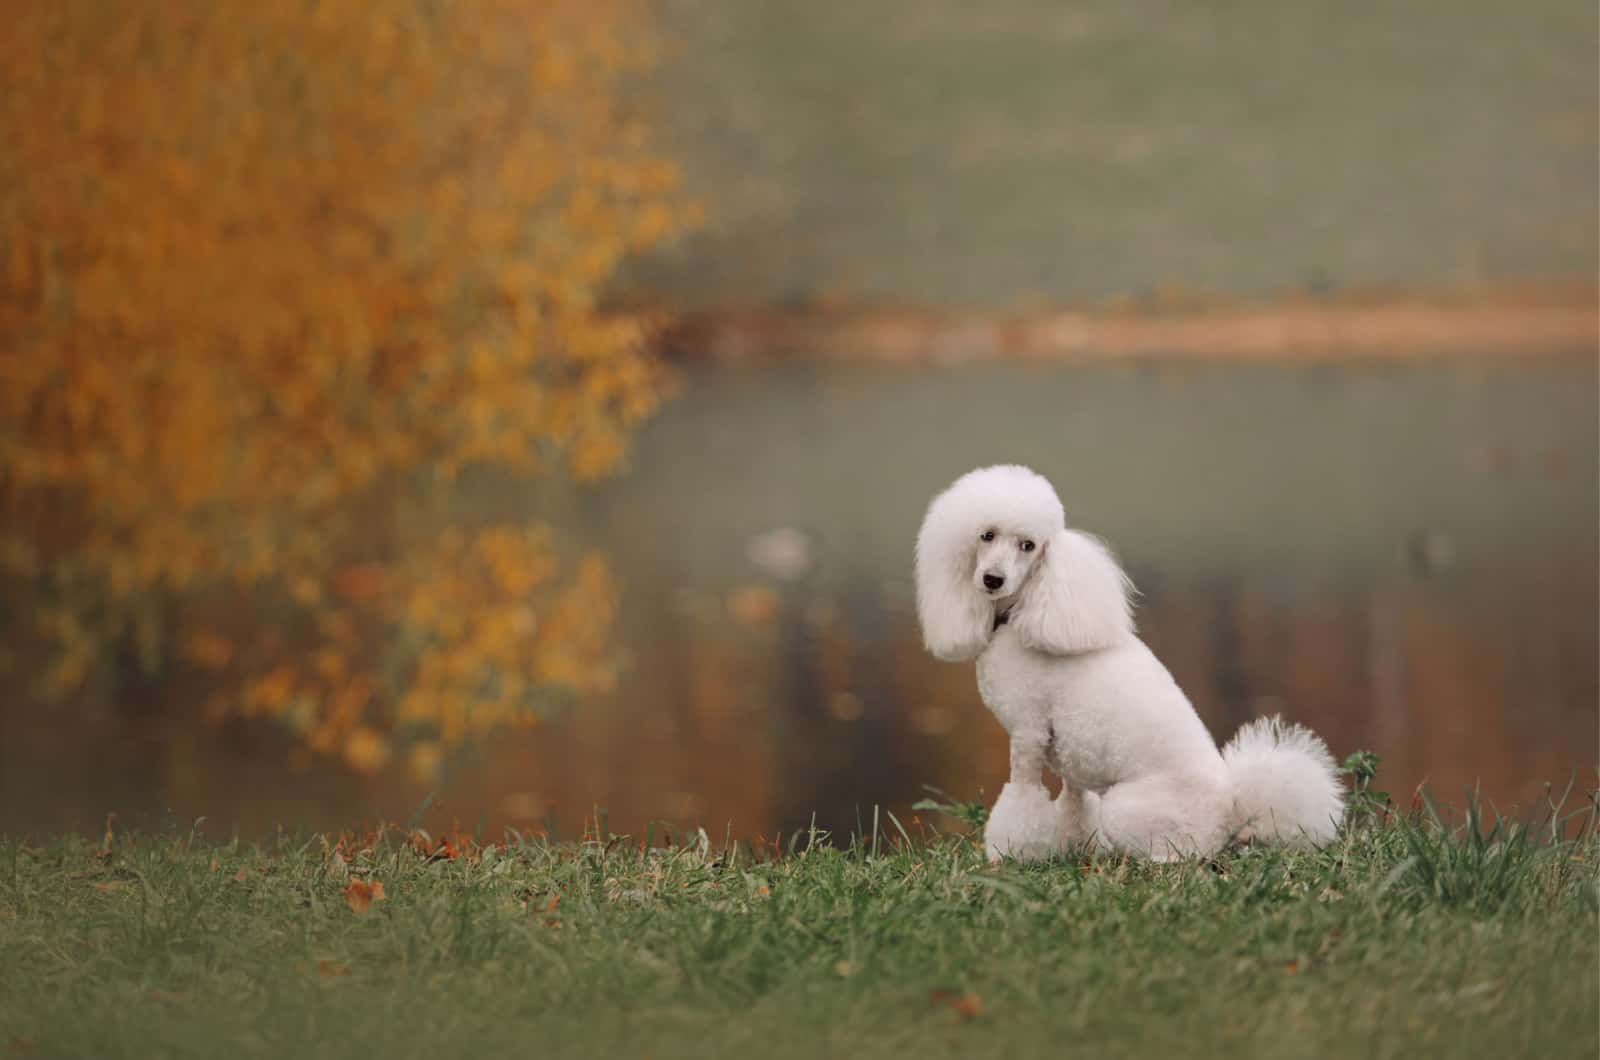 white moyen poodle